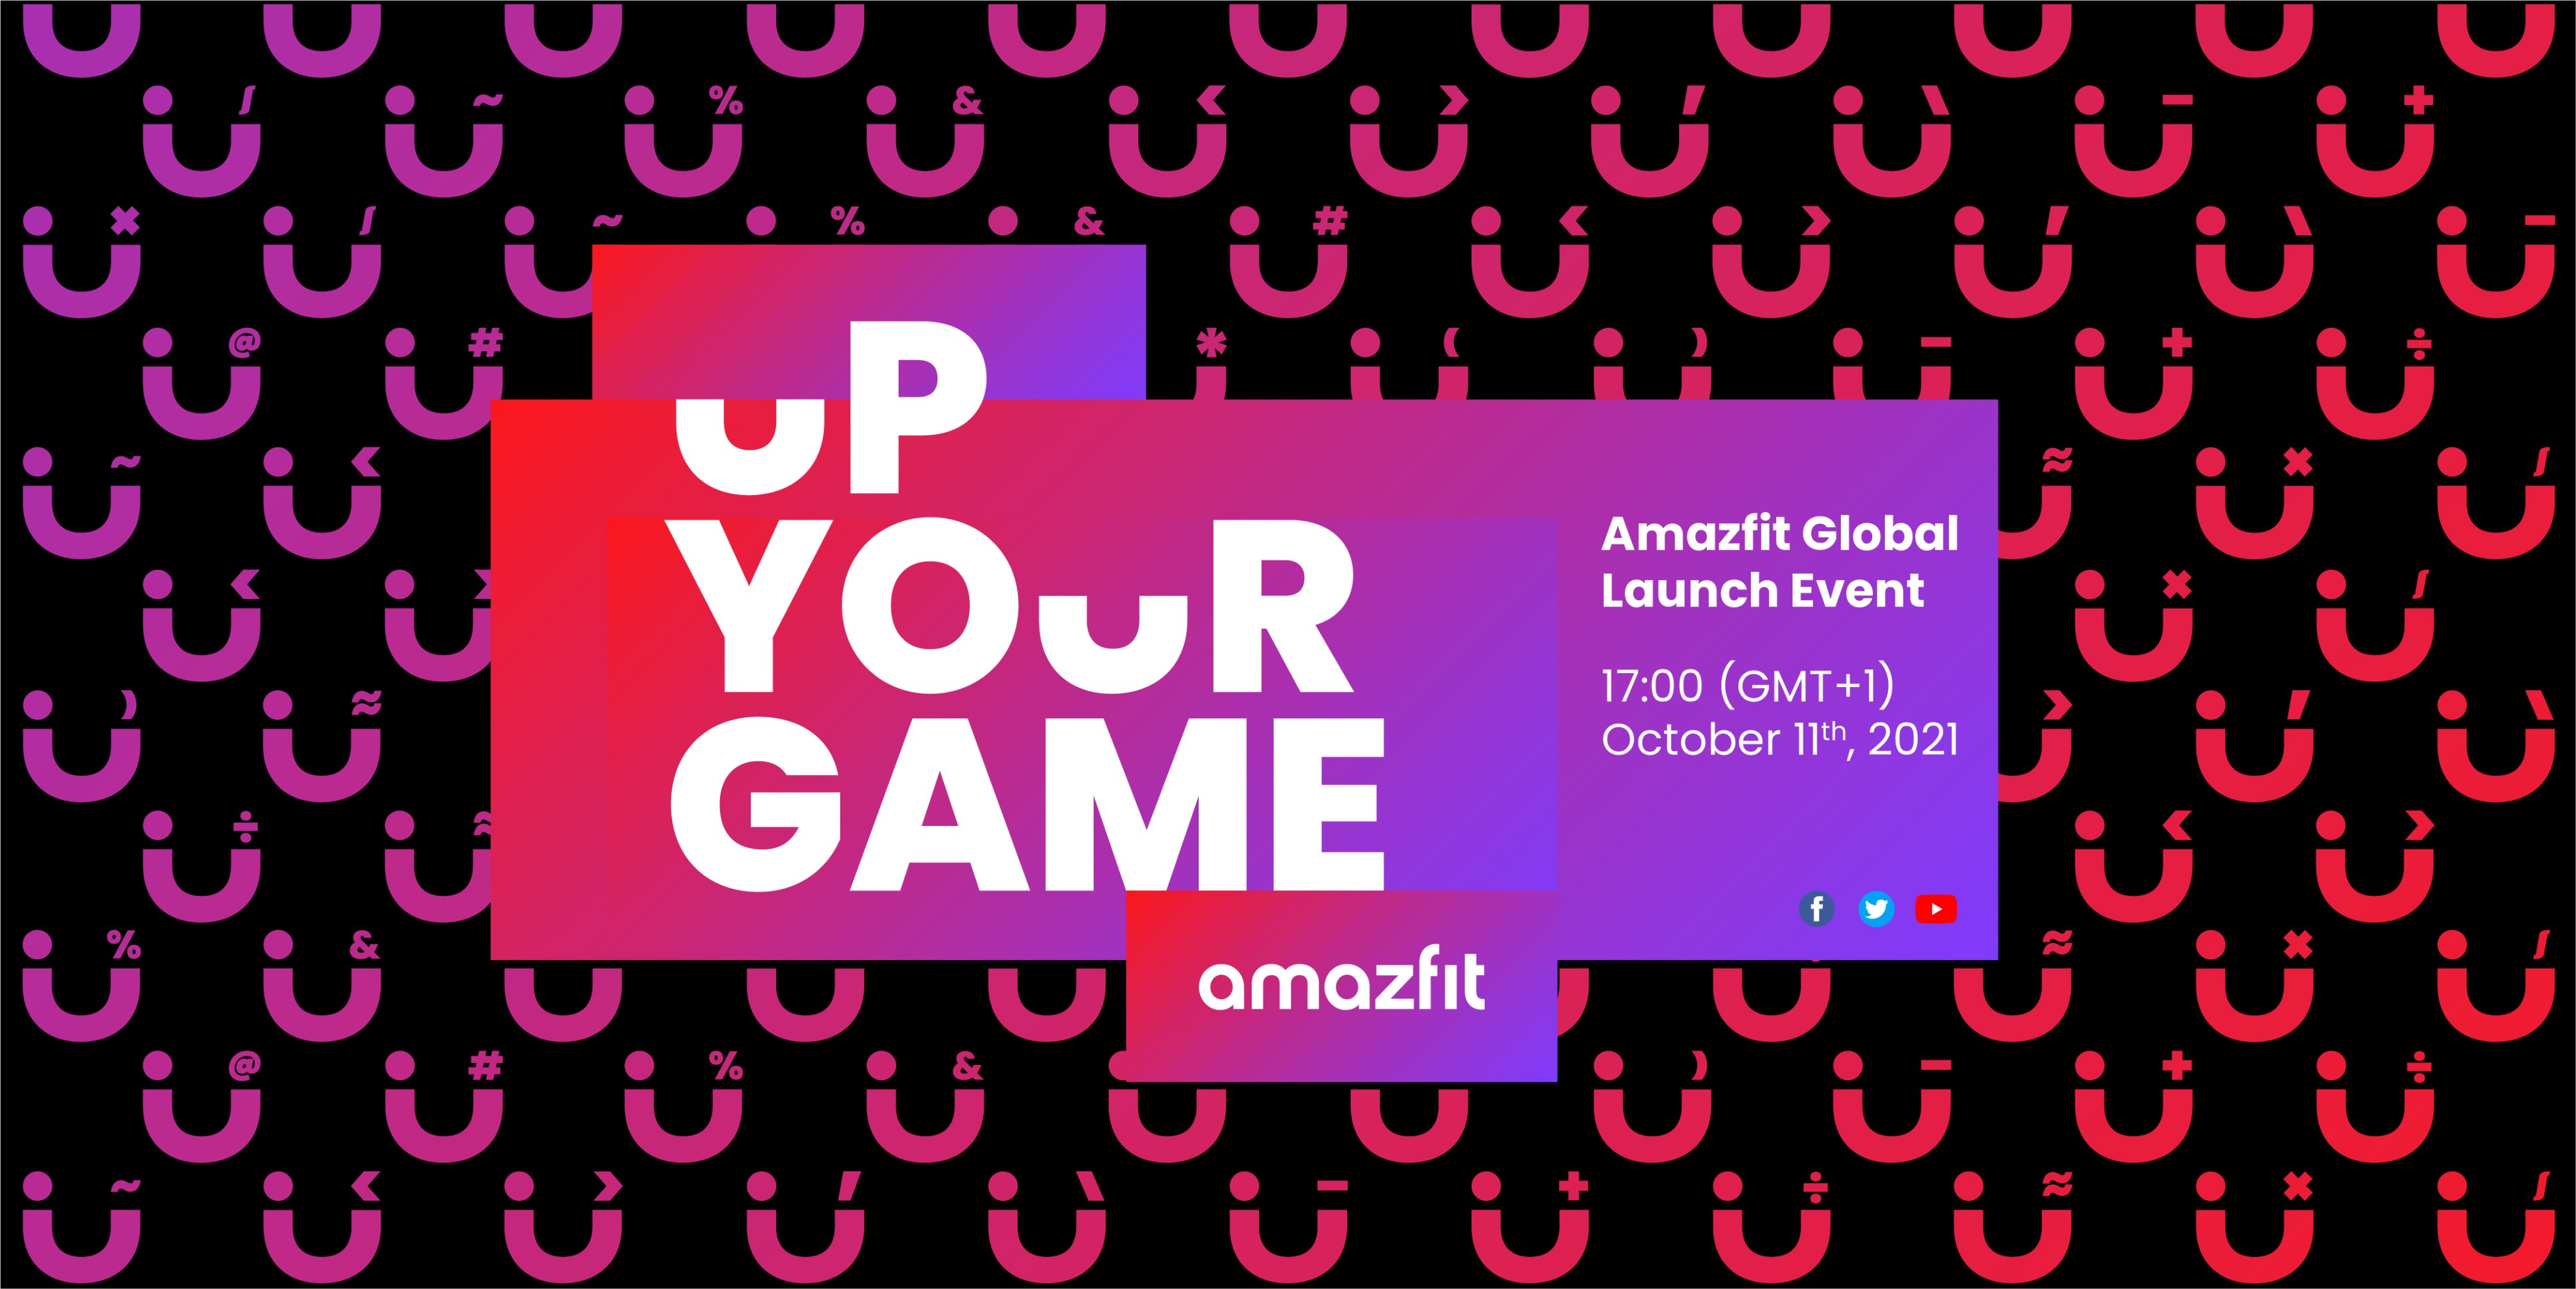 Huami kündigt Markteinführung am 11. Oktober an: Erwarten Sie die Smartwatches Amazfit GTR 3 und Amazfit GTS 3 zum Event